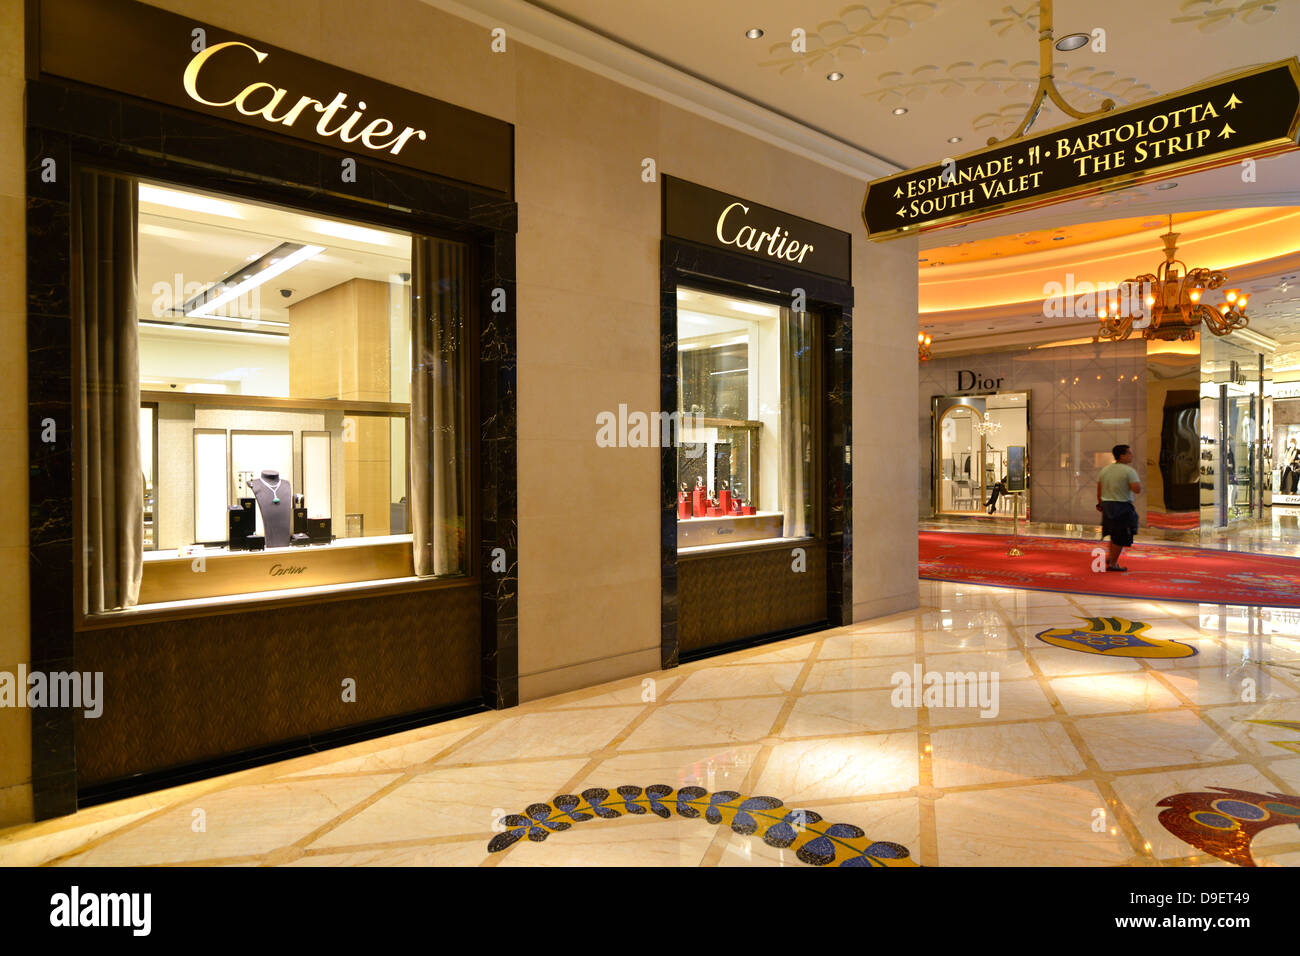 Cartier High Resolution Stock 